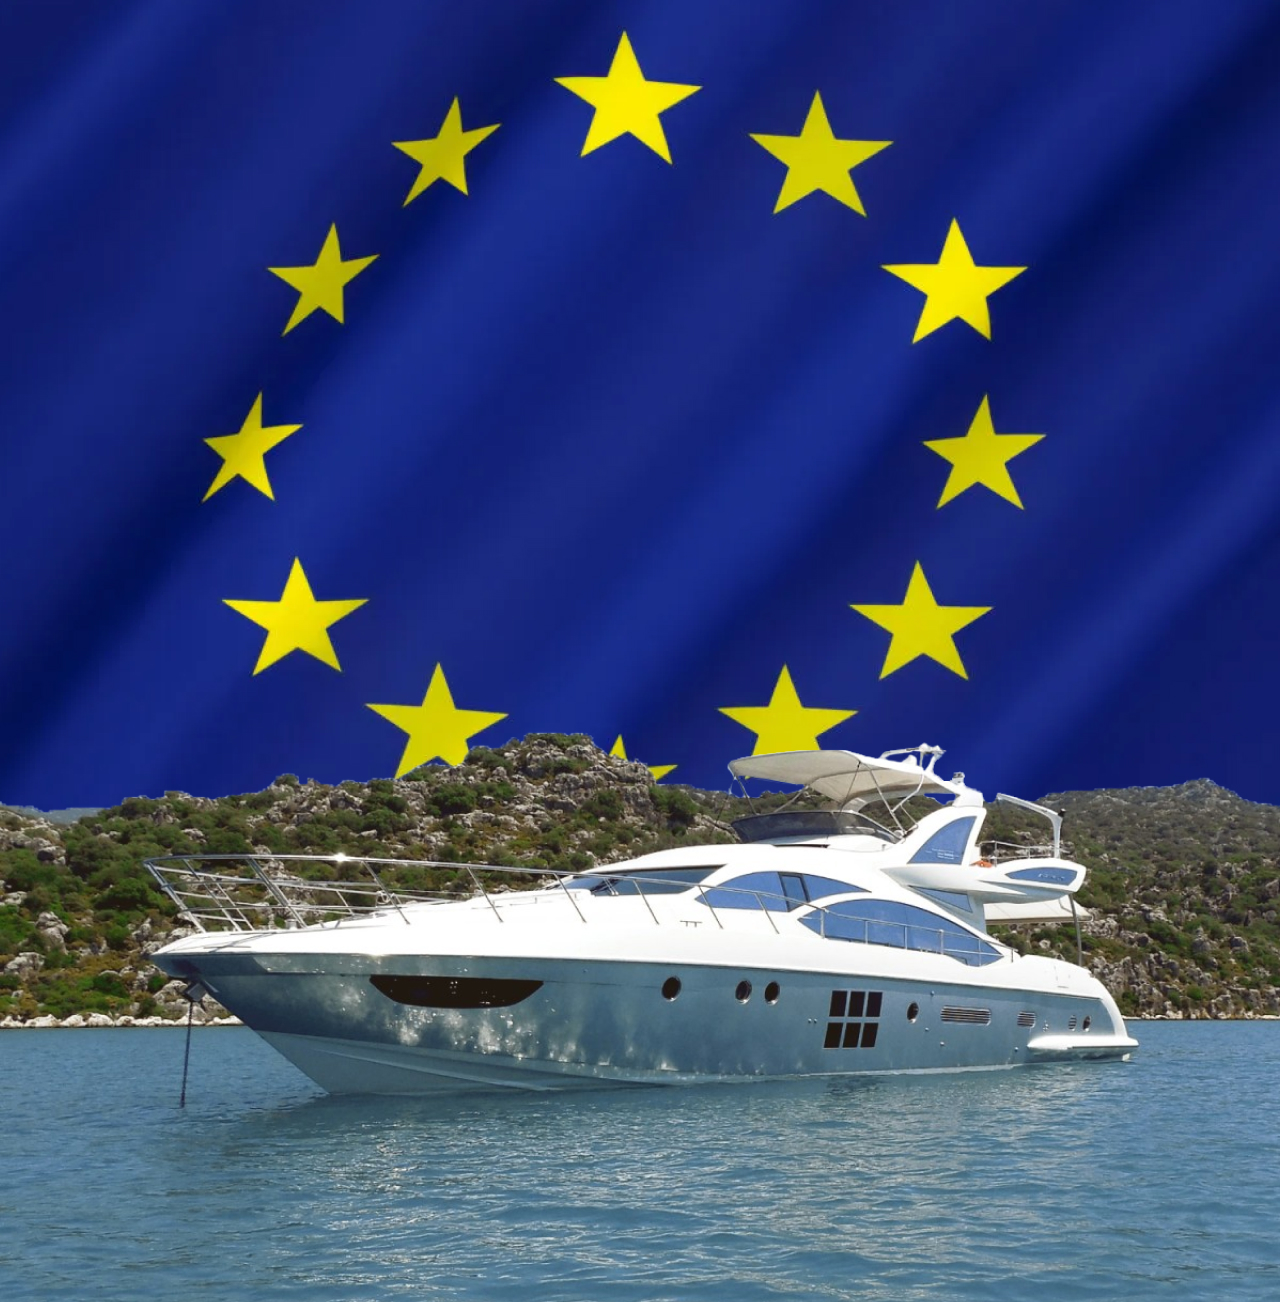 купить яхту в лизинг в Европе, яхта в лизинг в Европе